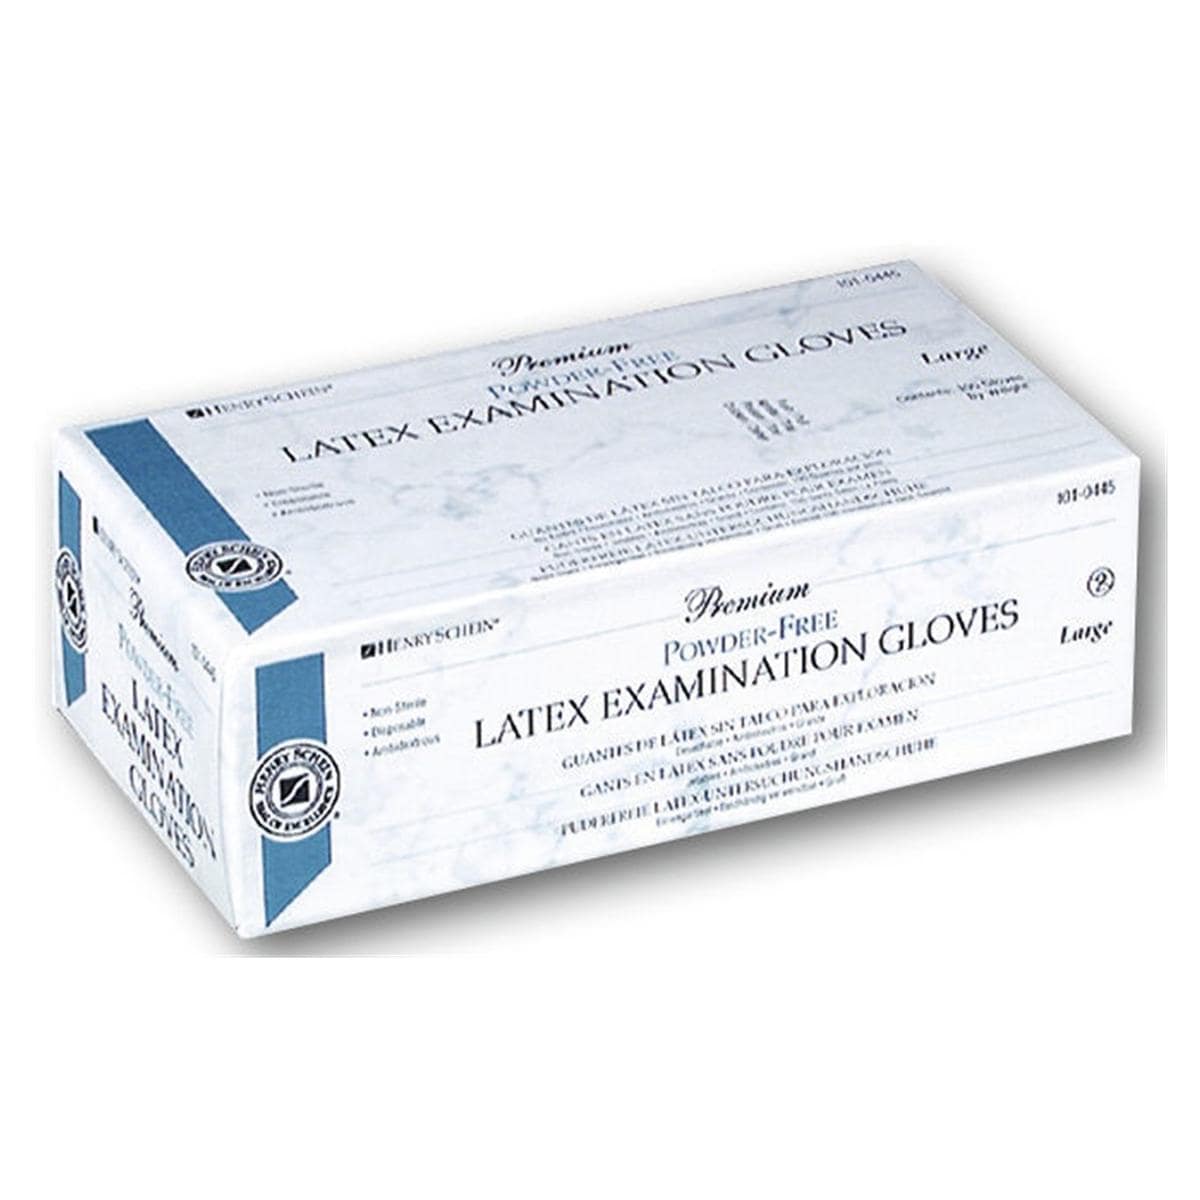 Premium Latex Examination Gloves - XL - 100 pcs